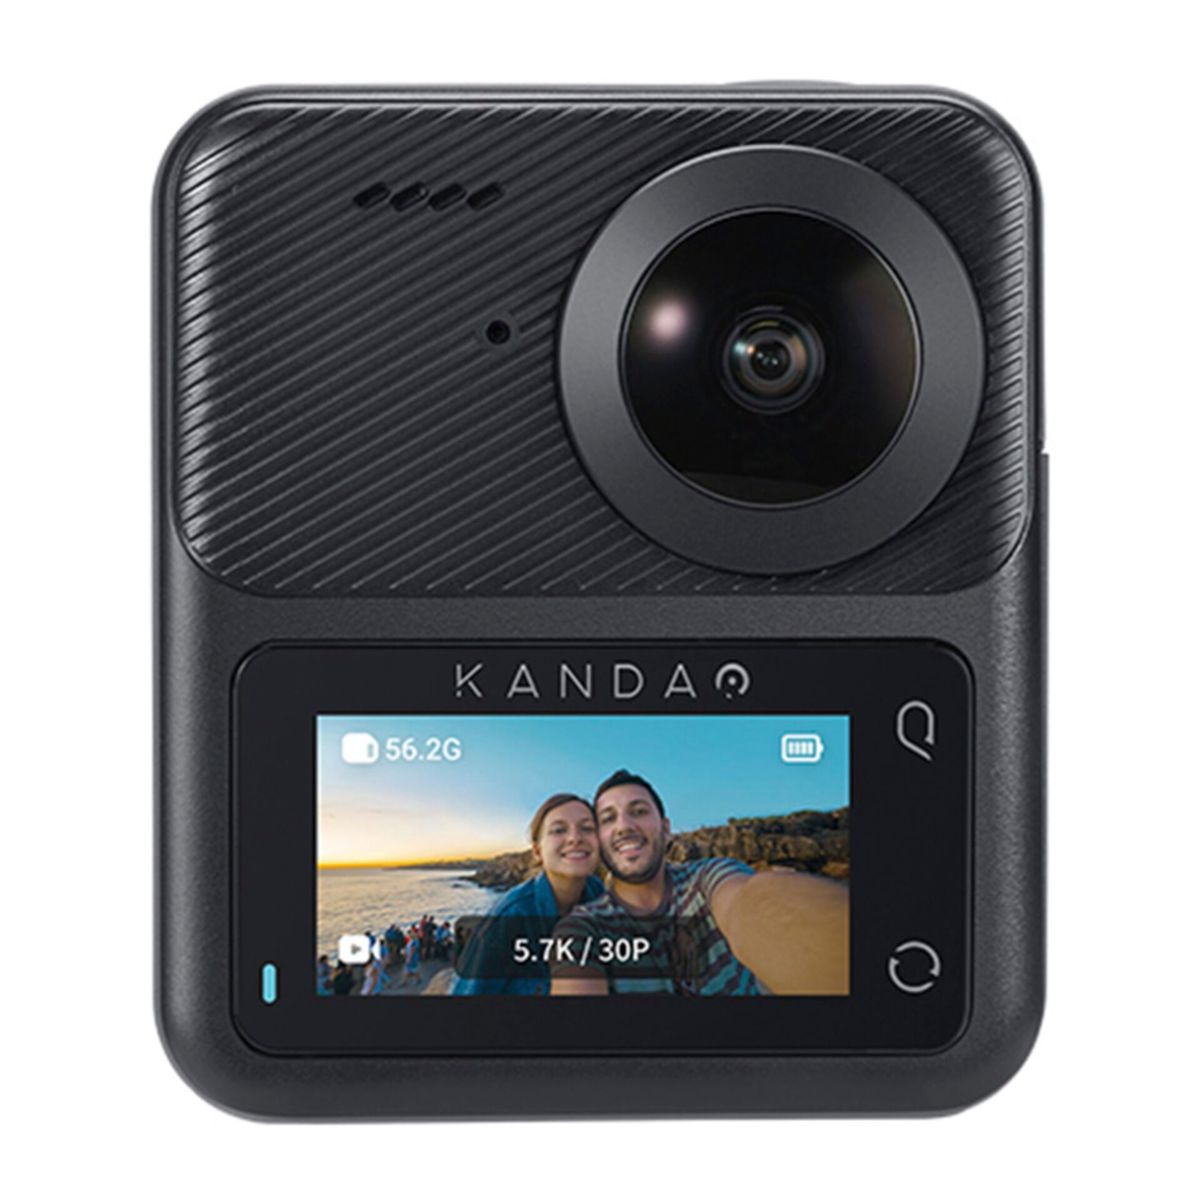 KANDAO QooCam 3 360° Action Combo Travel Camera Action Kamera 